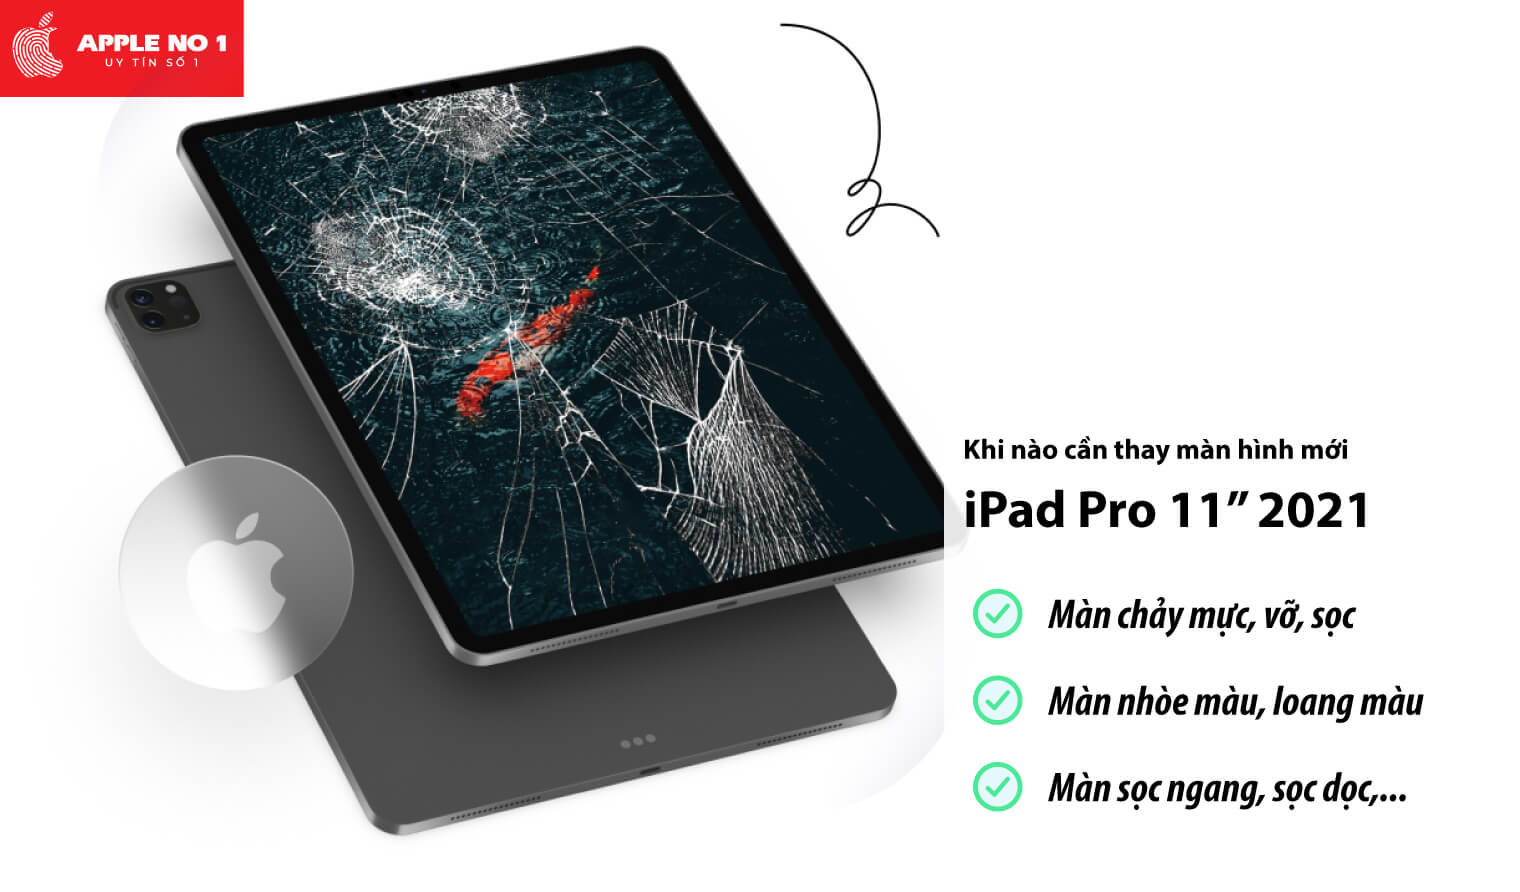 Thay màn hình iPad Pro 11 inch 2021 khi nào?